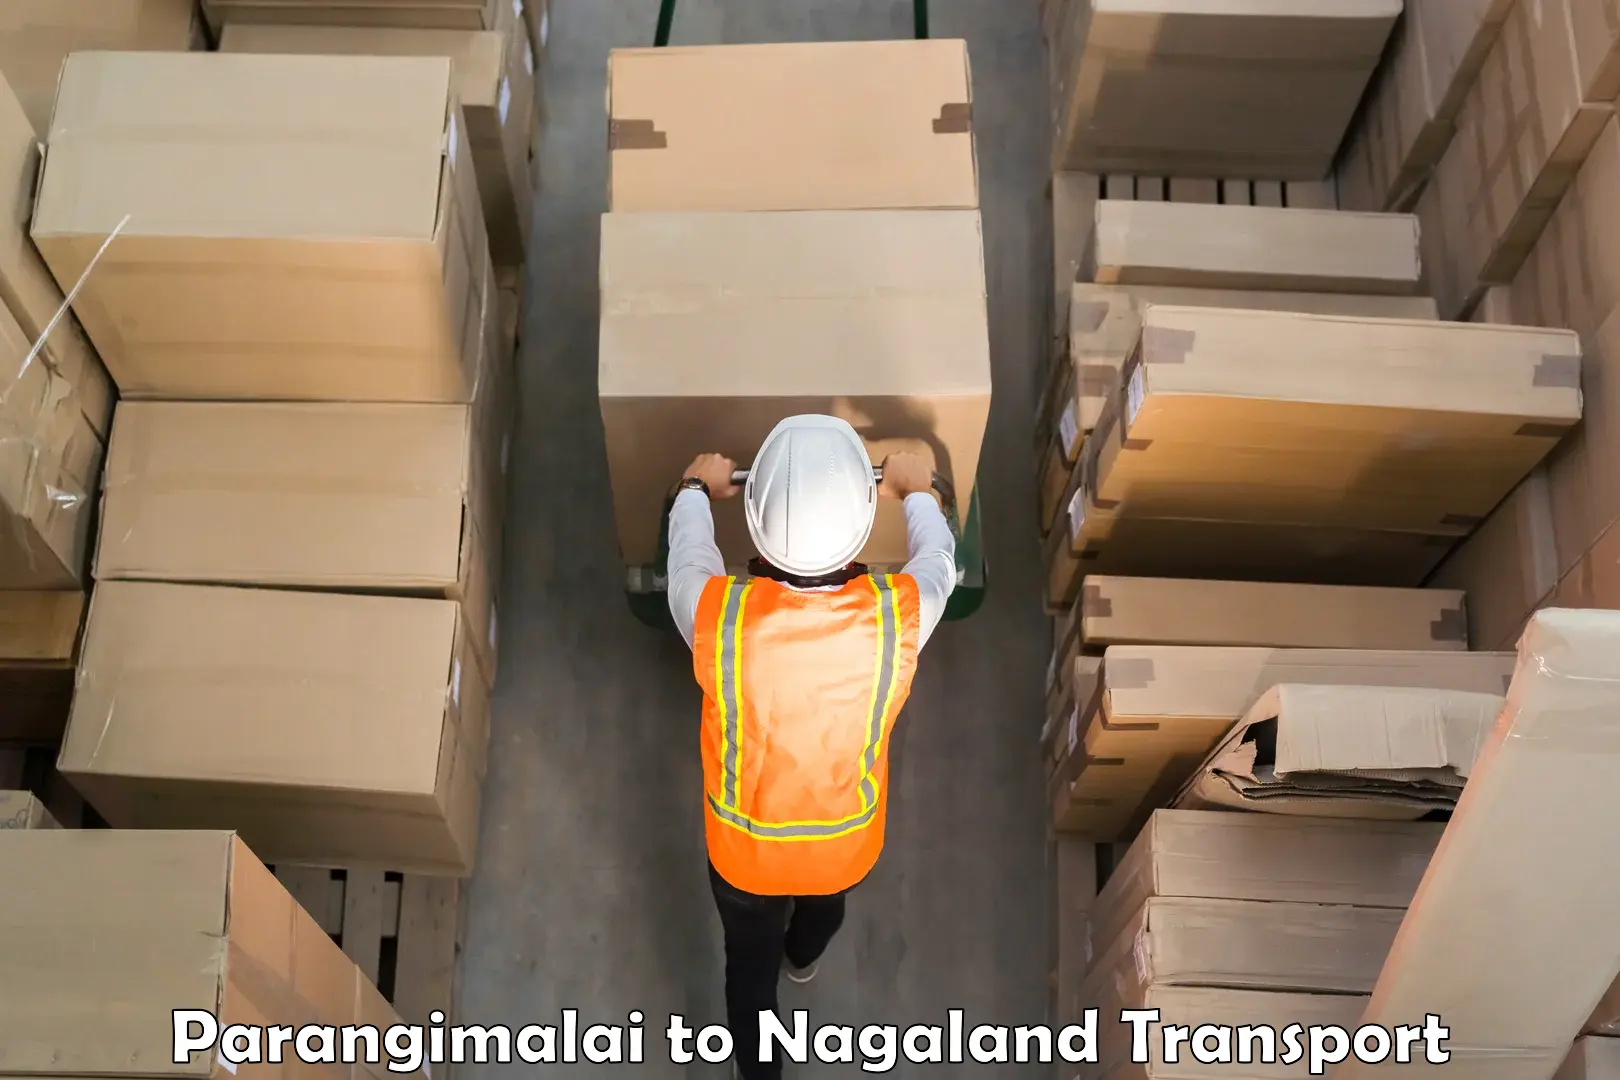 Air freight transport services Parangimalai to Nagaland